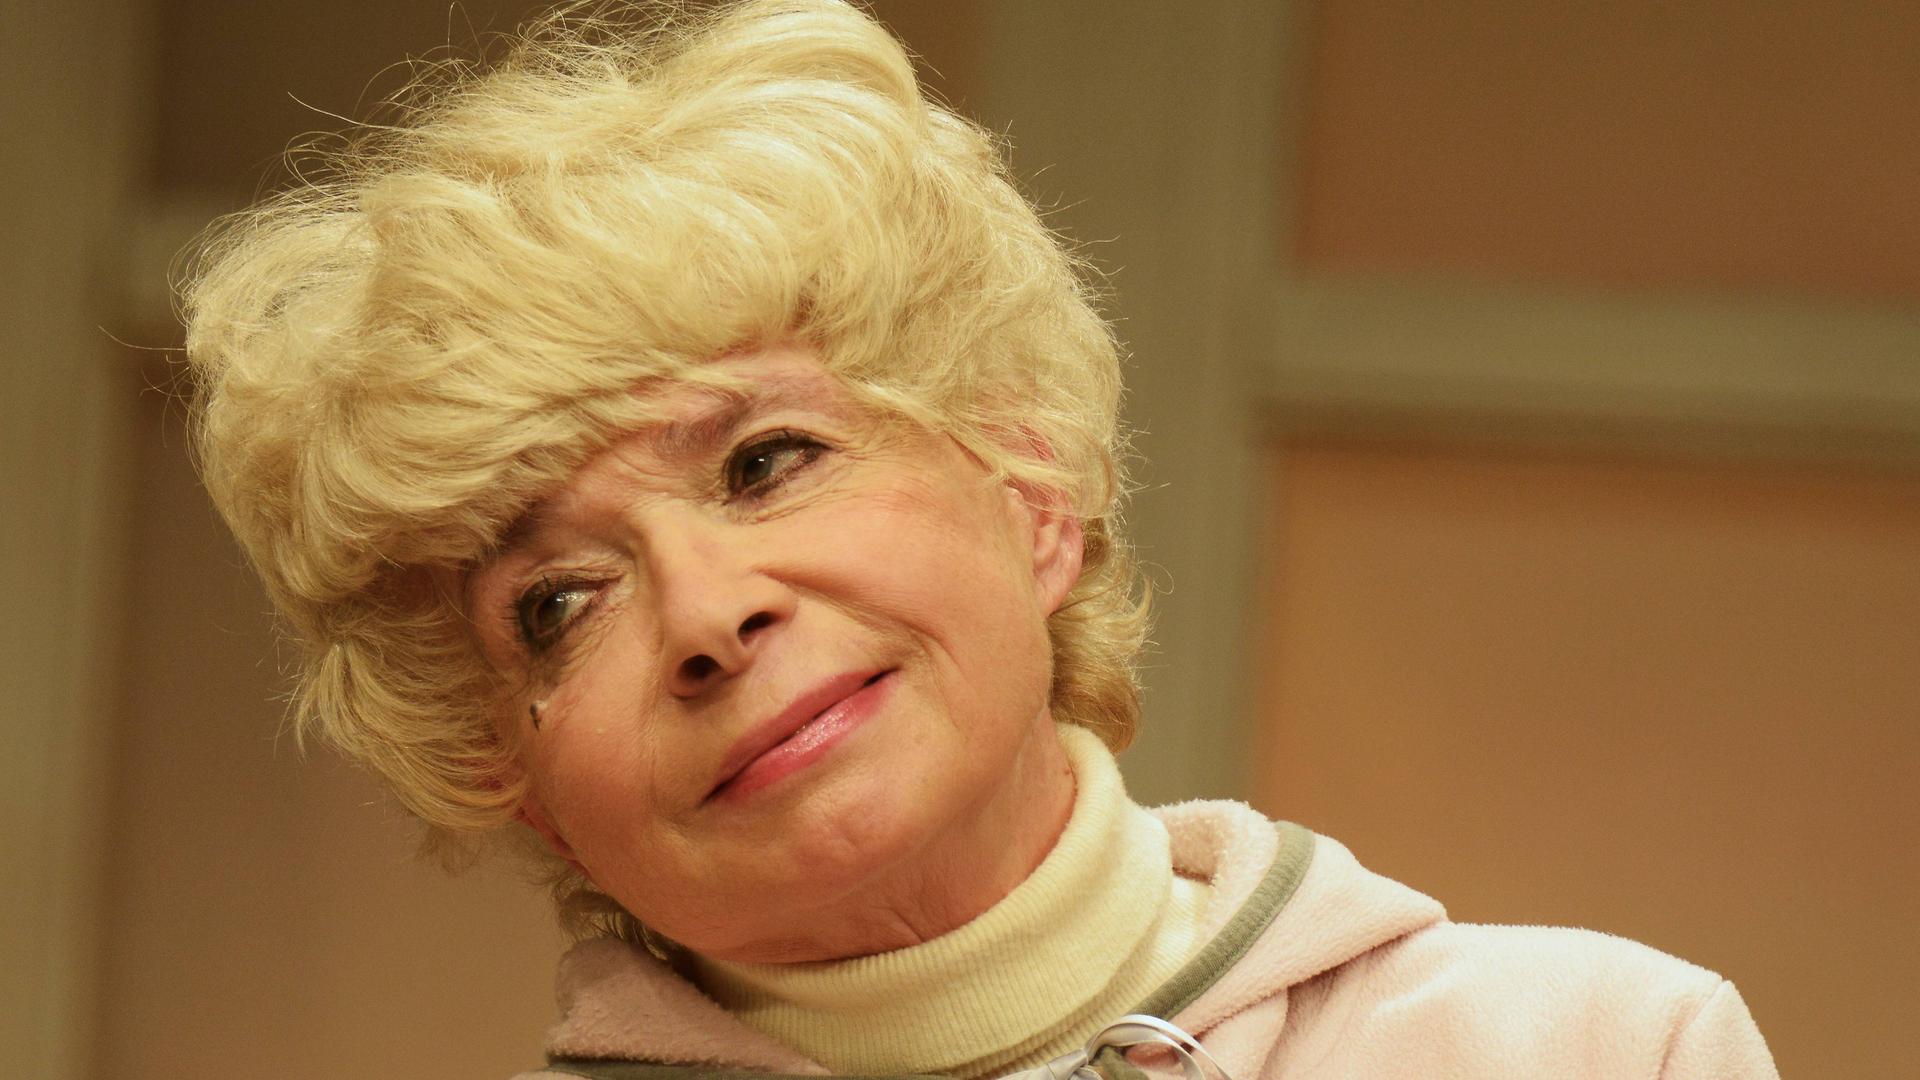 Ingrid Steeger im Jahr 2015 in der Komödie "Der Kurschattenmann" im Winterhuder Fährhaus" in Hamburg. Sie trägt einen Rollkragenpullover und darüber einen Kapuzenpulli; sie lächelt und hält den Kopf leicht schräg.